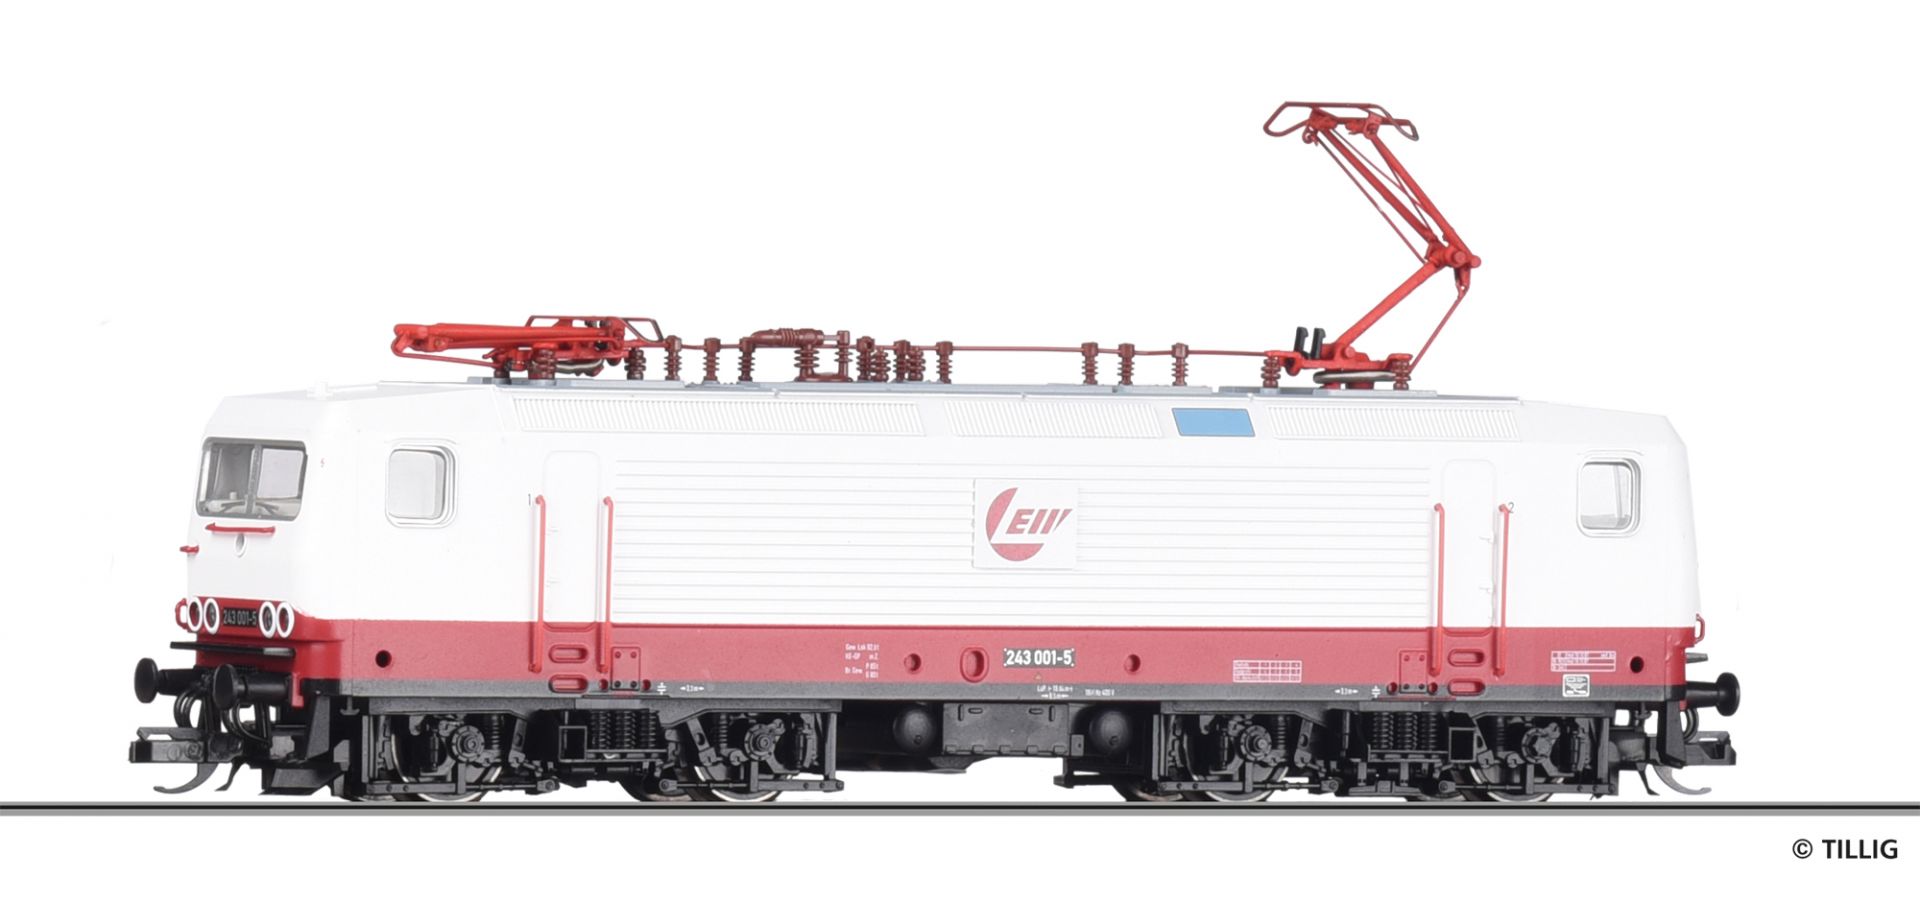 502401 | Electric locomotive LEW